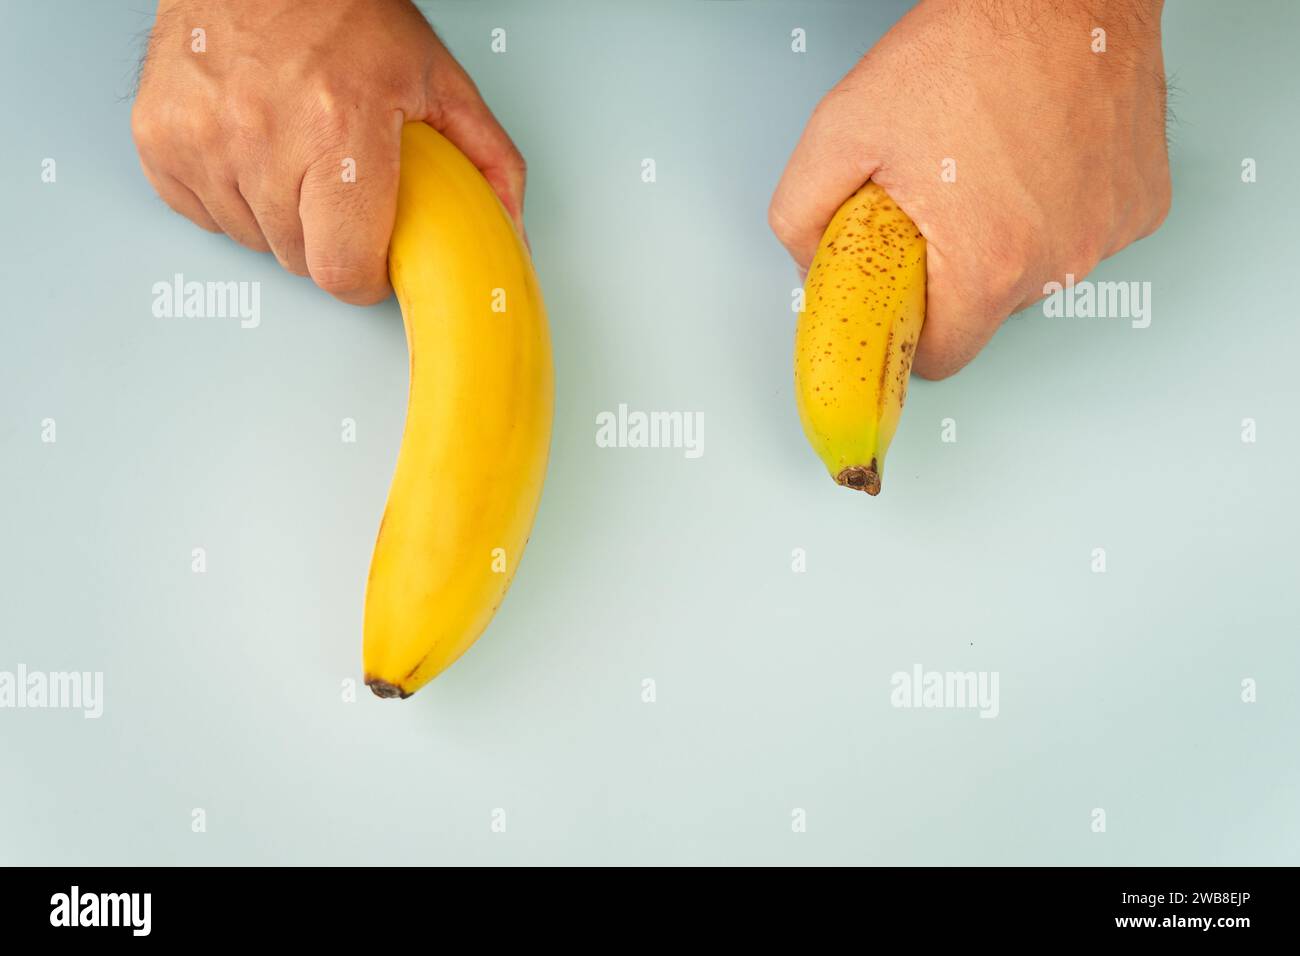 Petite banane comparer taille Wish banane sur fond bleu. Libido de vie sexuelle, taille du pénis et concept de puissance. Pose à plat, vue de dessus, espace de copie Banque D'Images